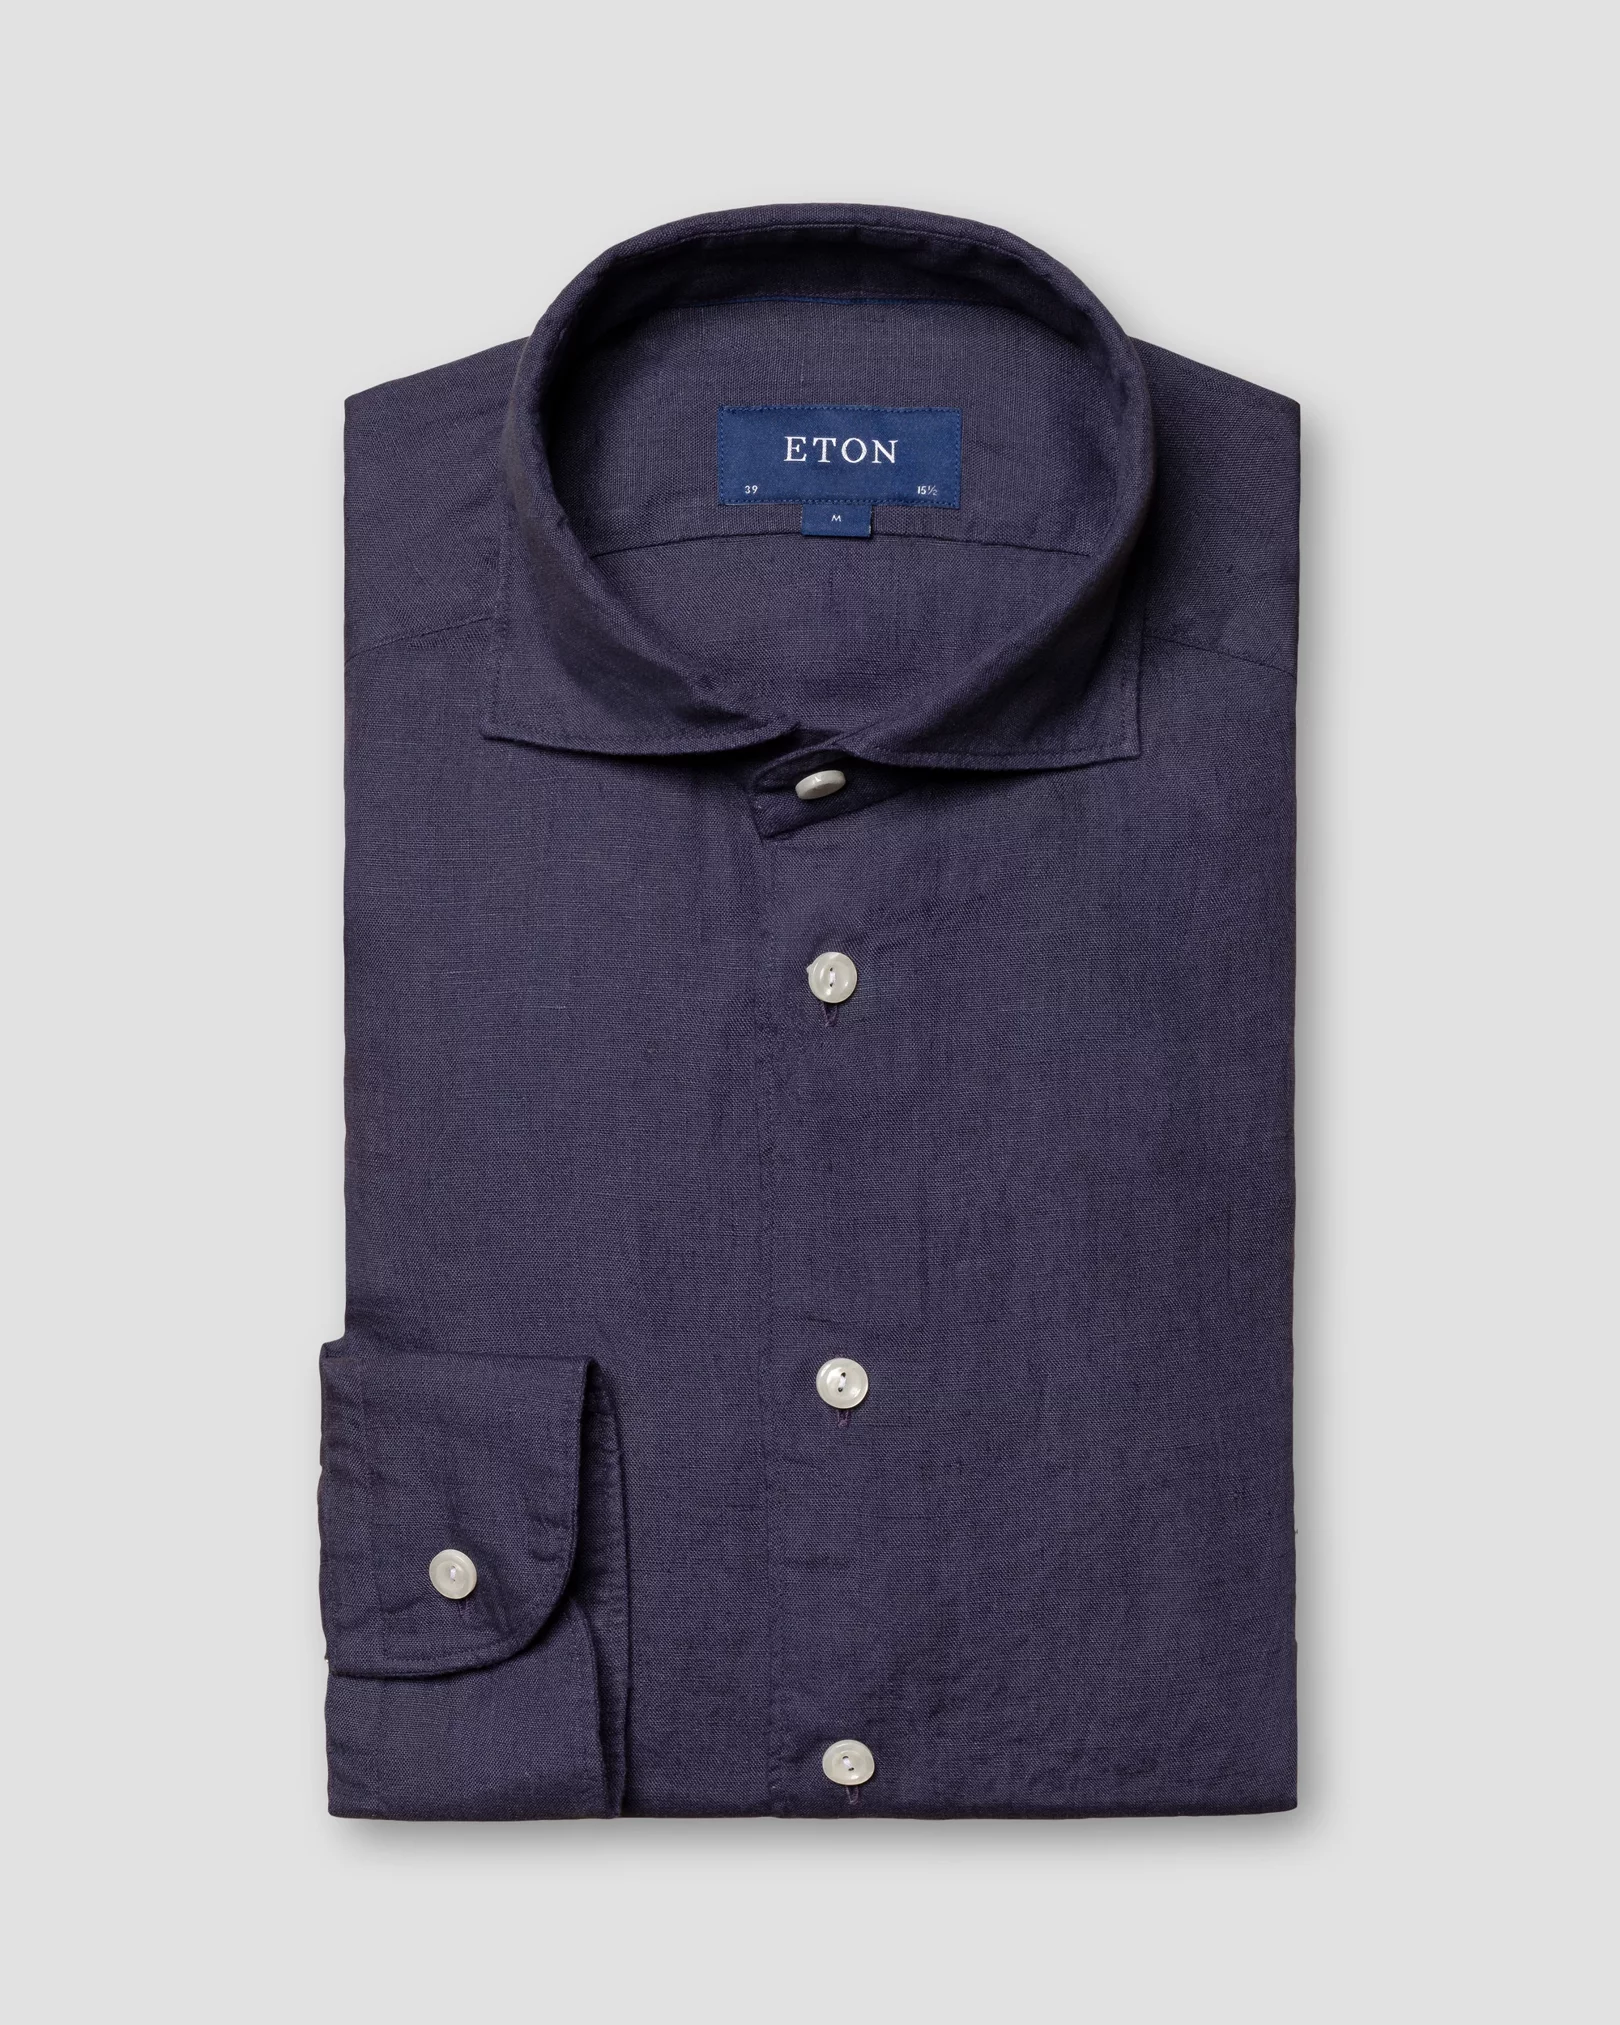 Eton - navy blue linen wide spread